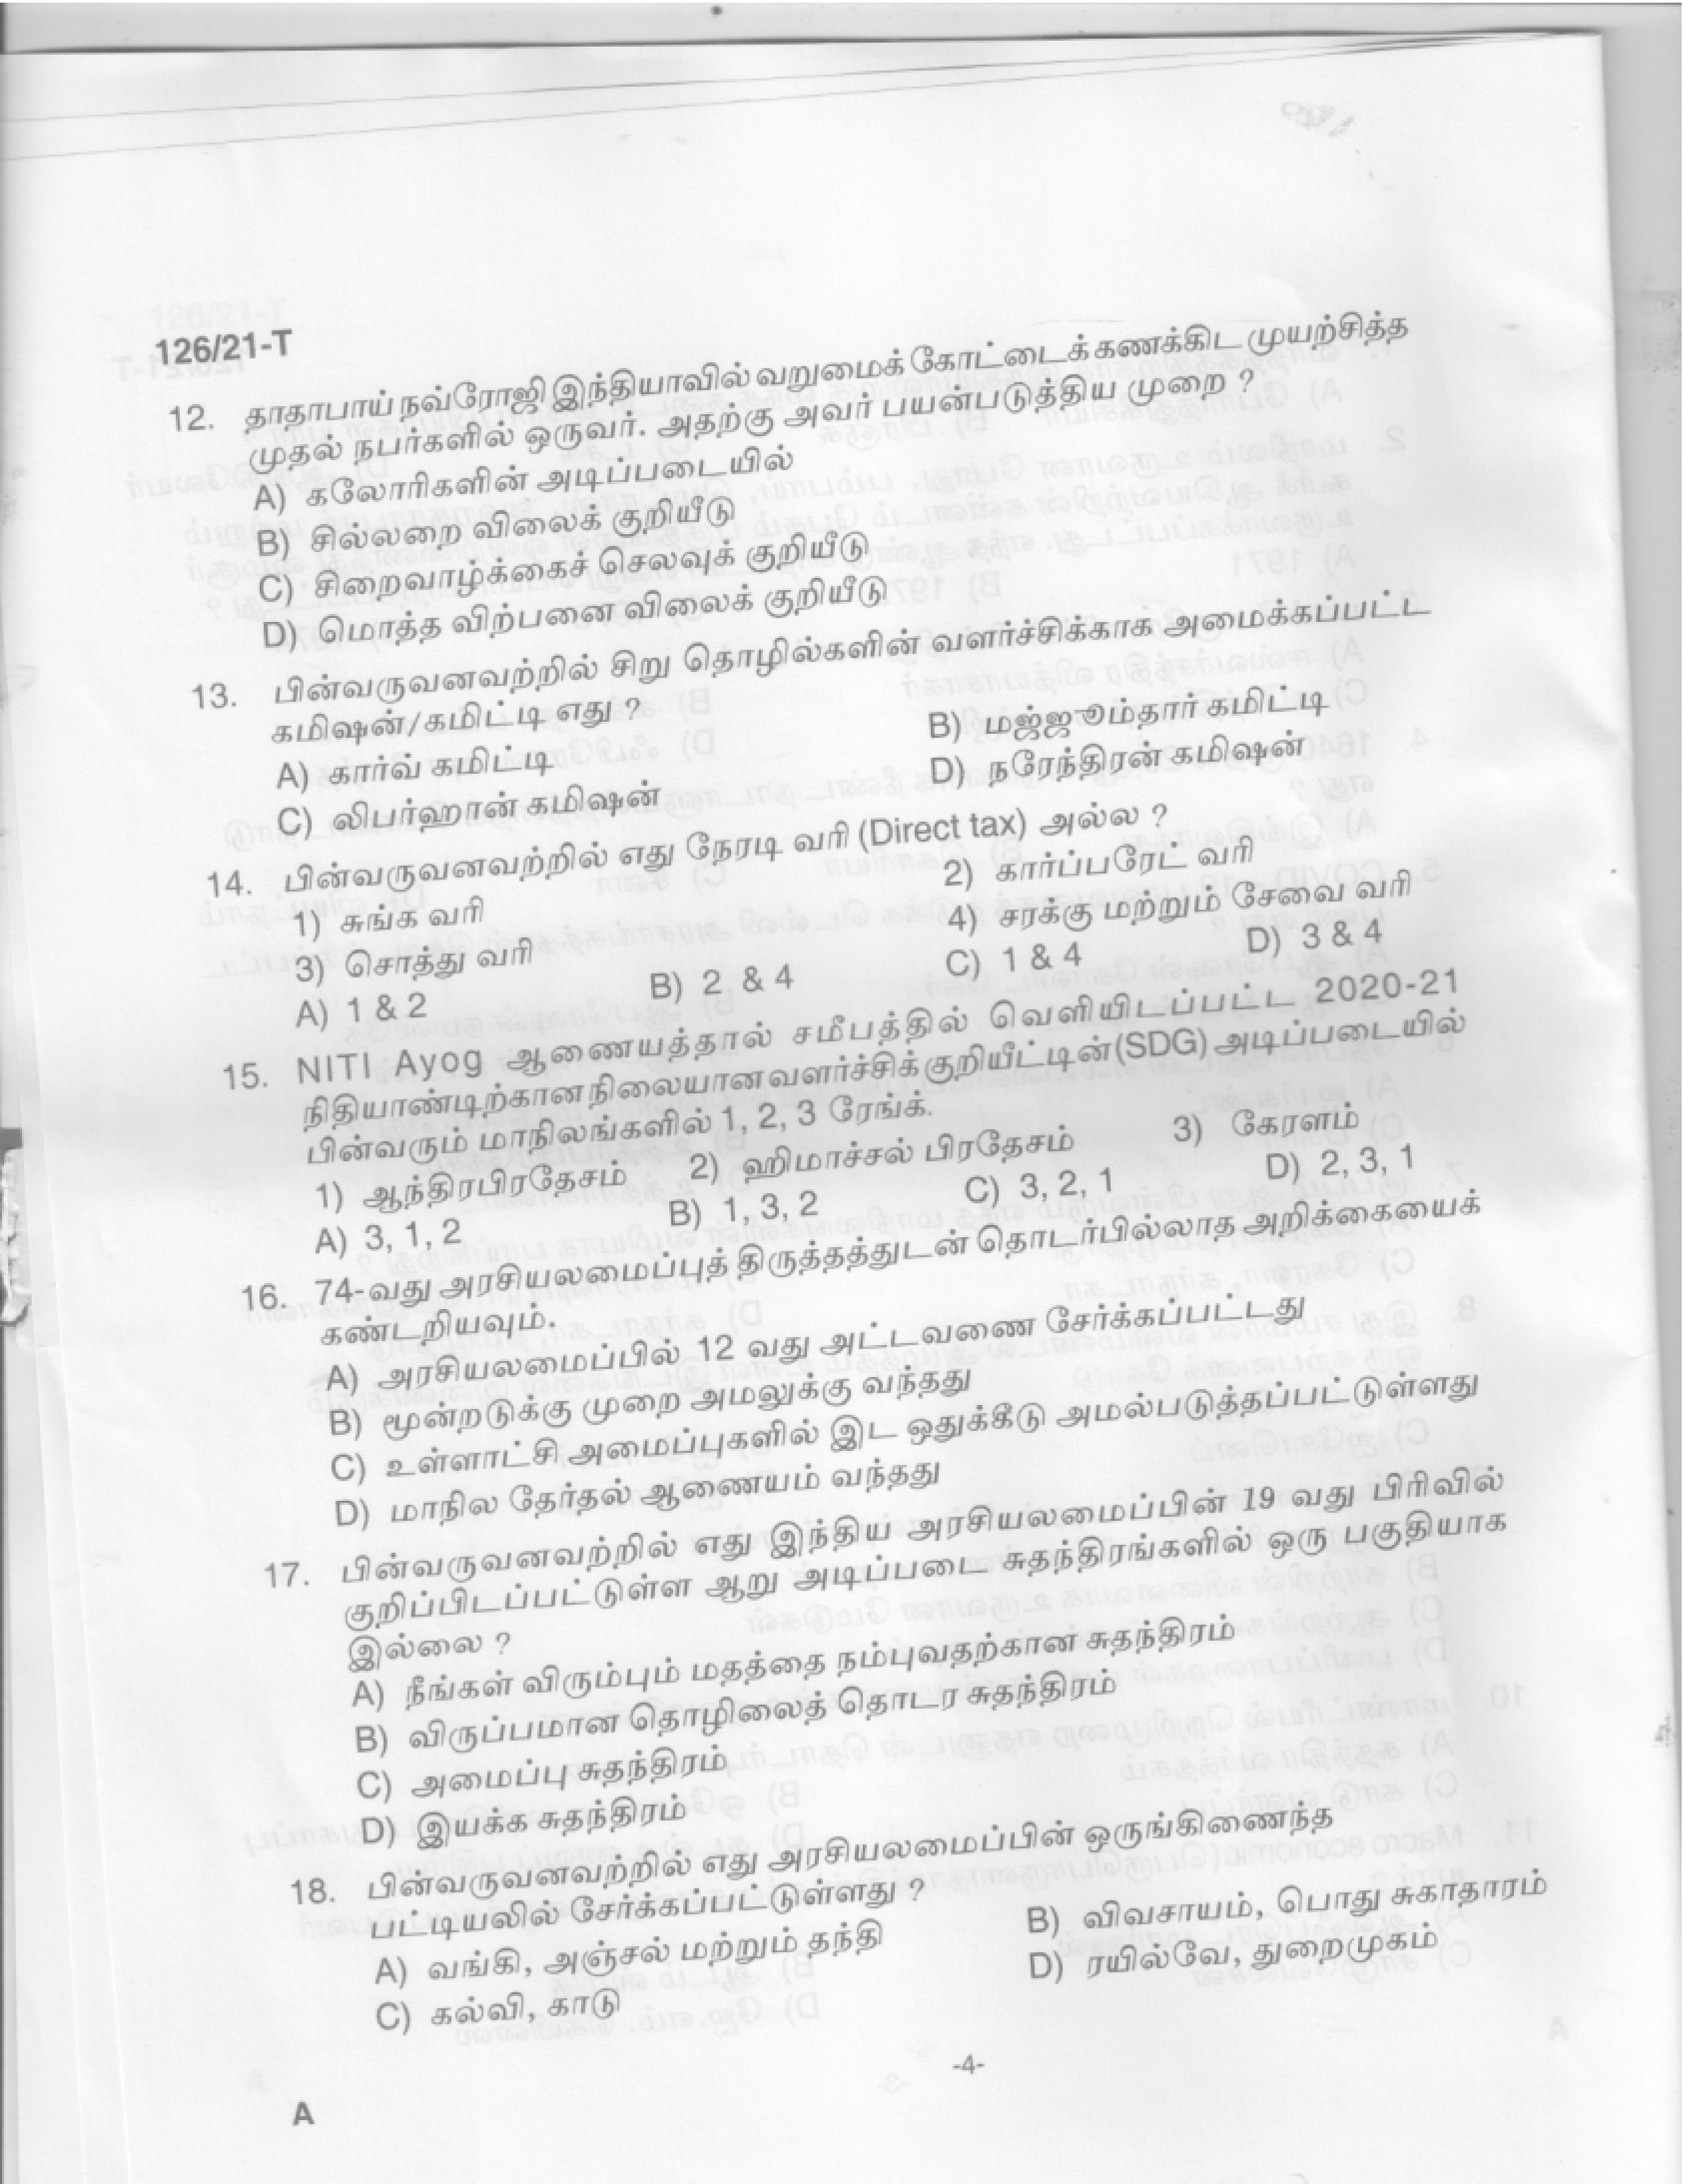 Upto SSLC Level Main Exam Assistant Compiler Tamil Exam 2021 Code 1262021 T 2